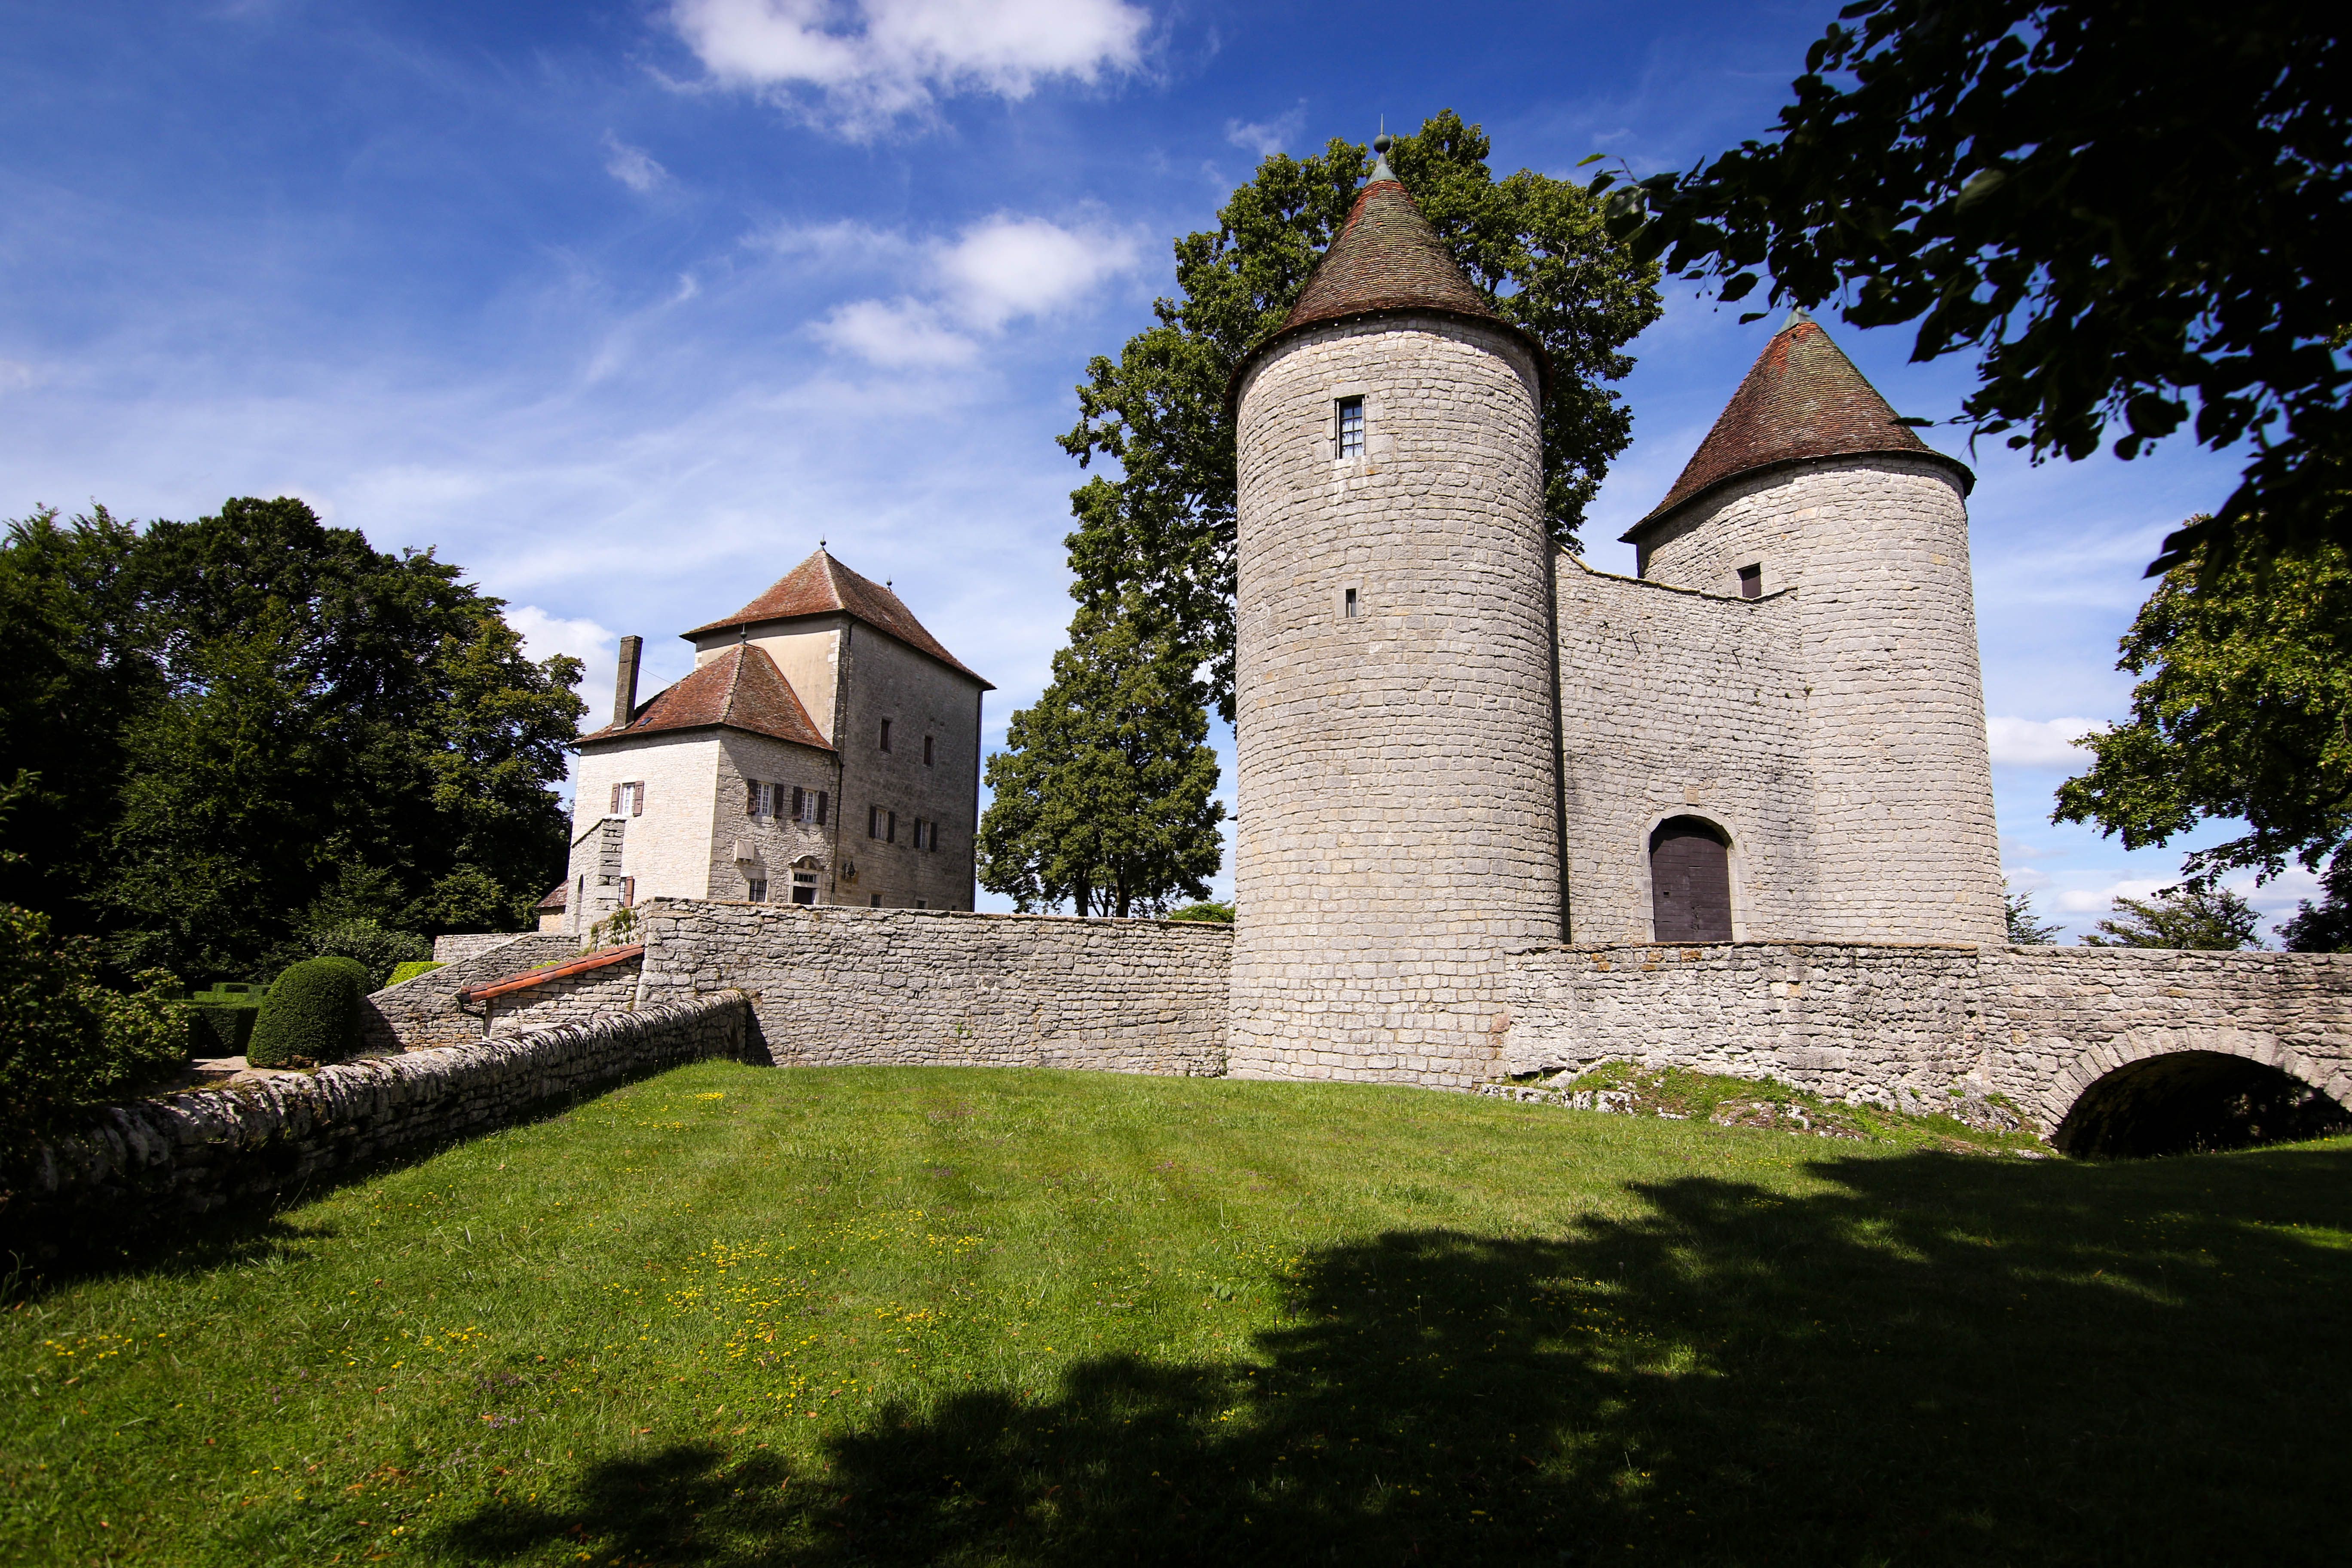 Andelot Castle, Andelot-Morval, France